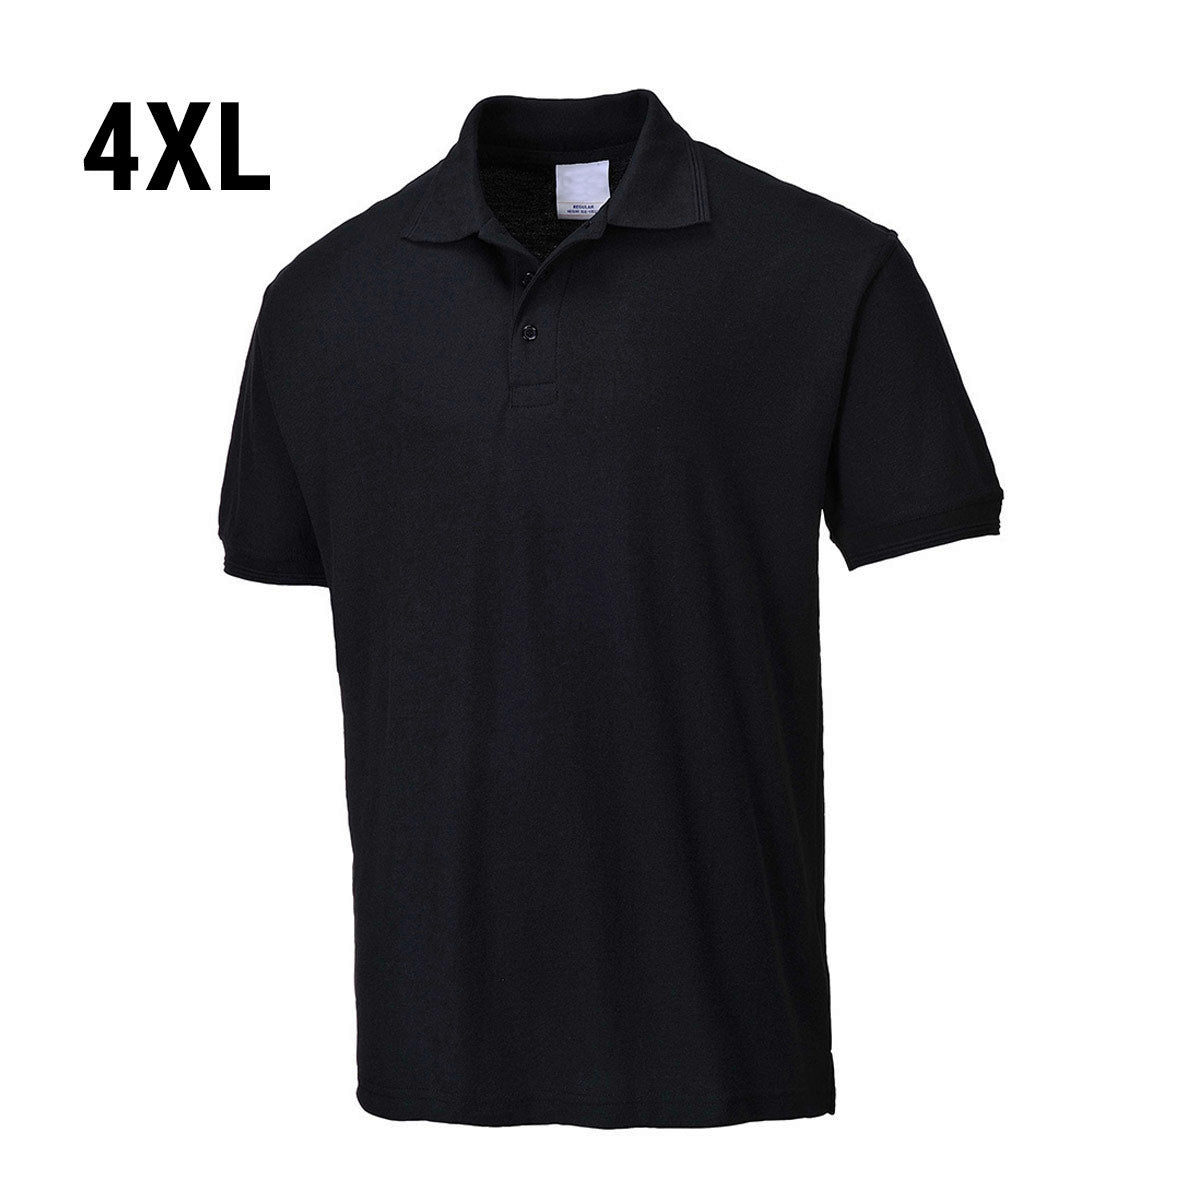 Poloshirt til mænd - Sort - Størrelse: 4XL